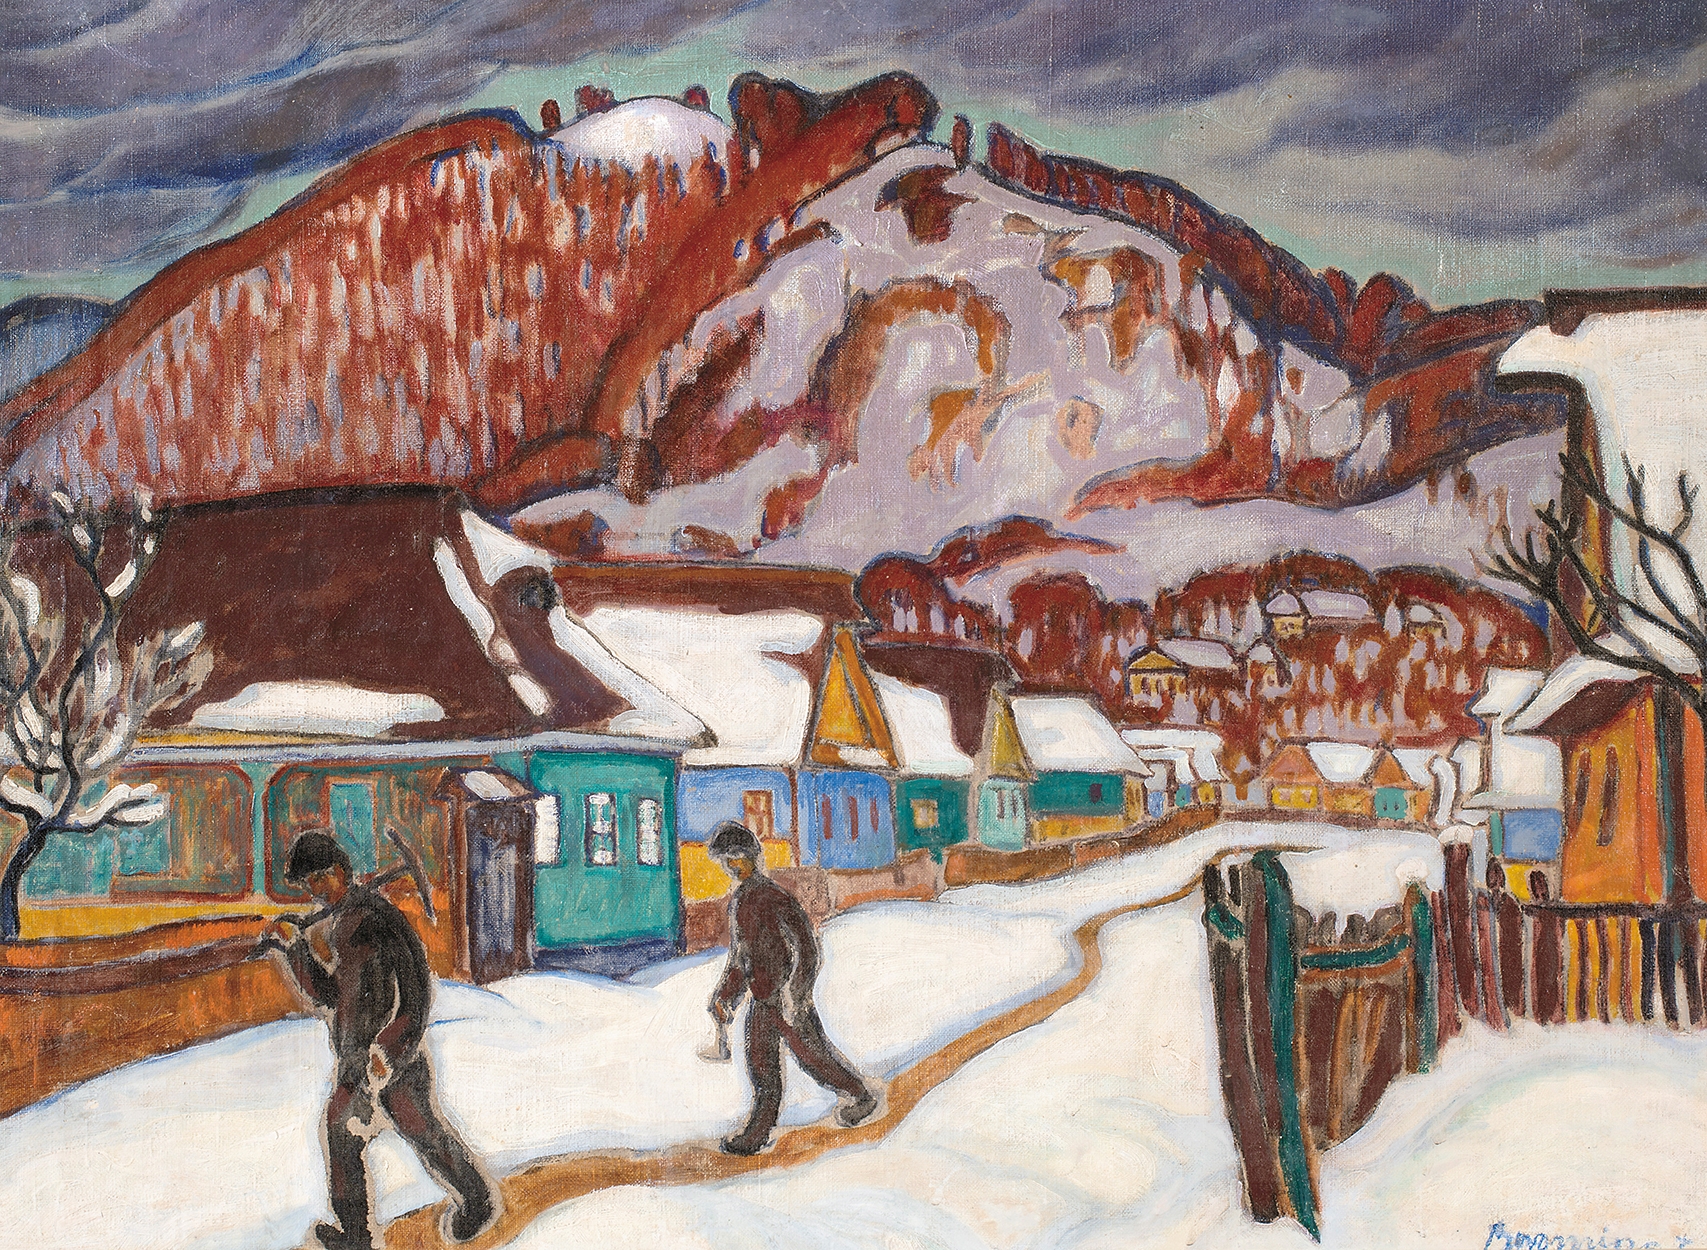 Boromisza Tibor (1880-1960) Veresvíz, bányászházak egy hideg, téli napon, 1911